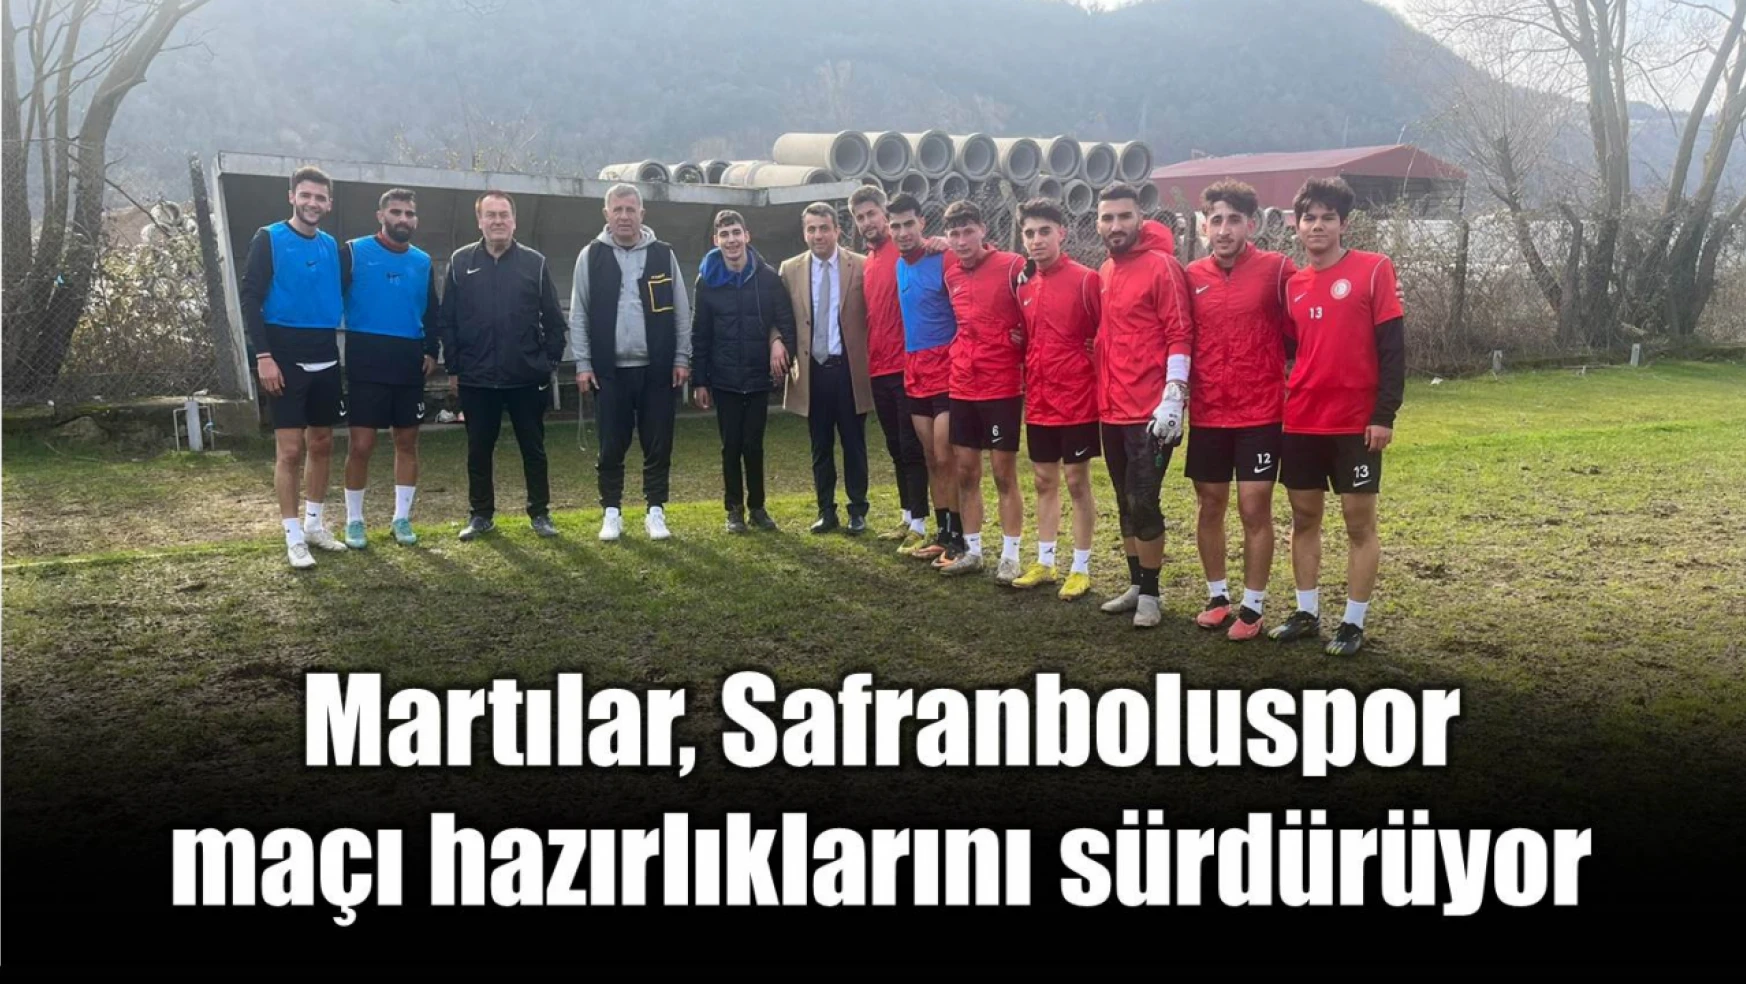 Bartınspor'da Safranbolu maçı hazırlıkları sürüyor